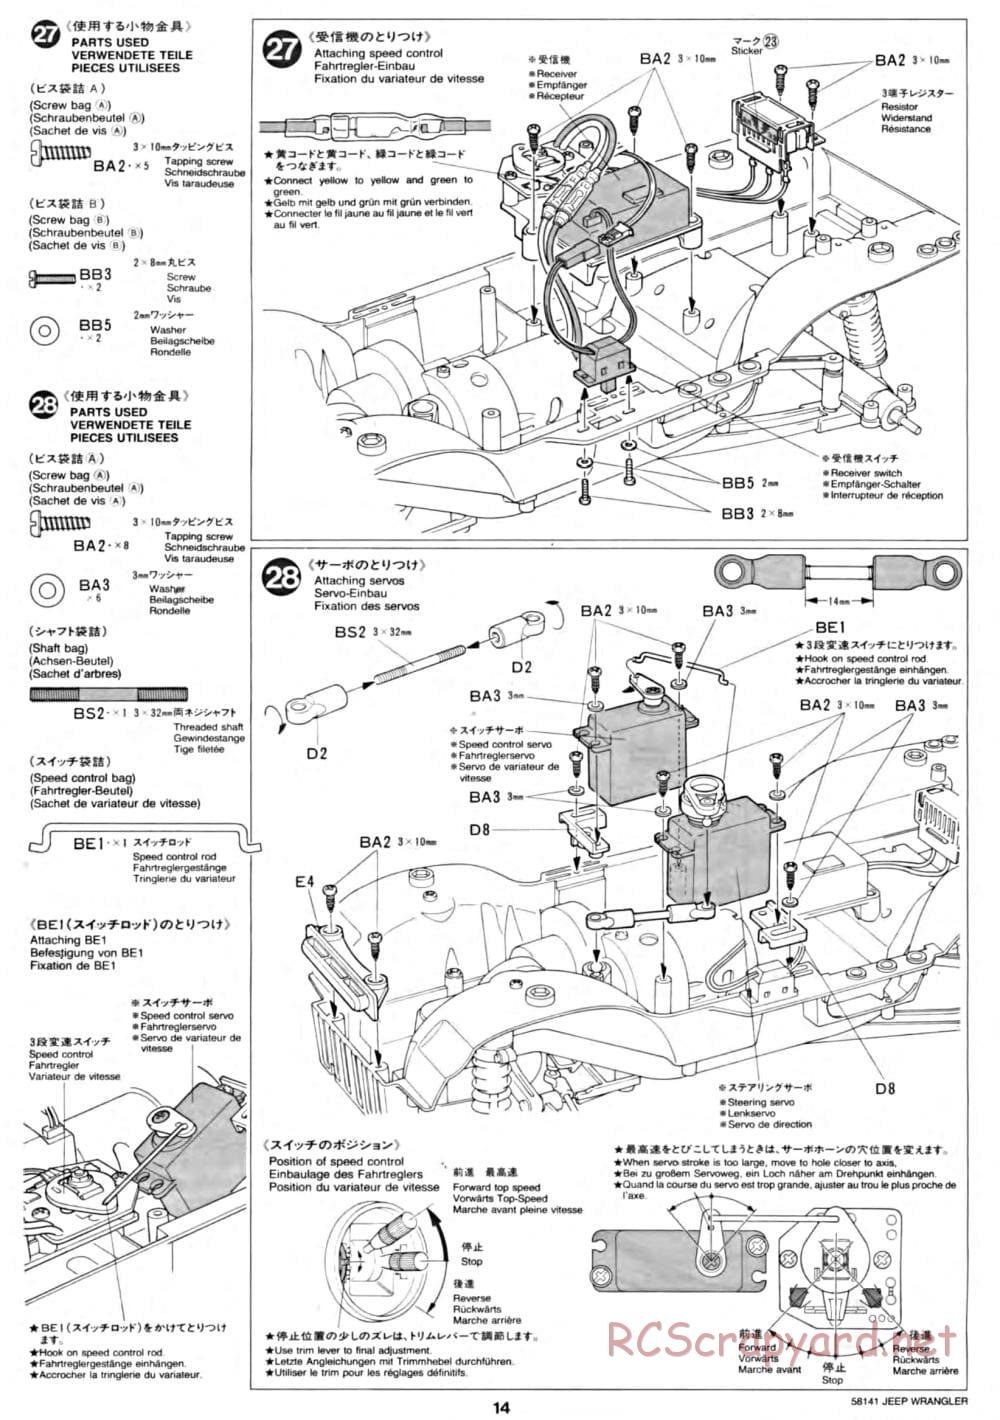 Tamiya - Jeep Wrangler - CC-01 Chassis - Manual - Page 14